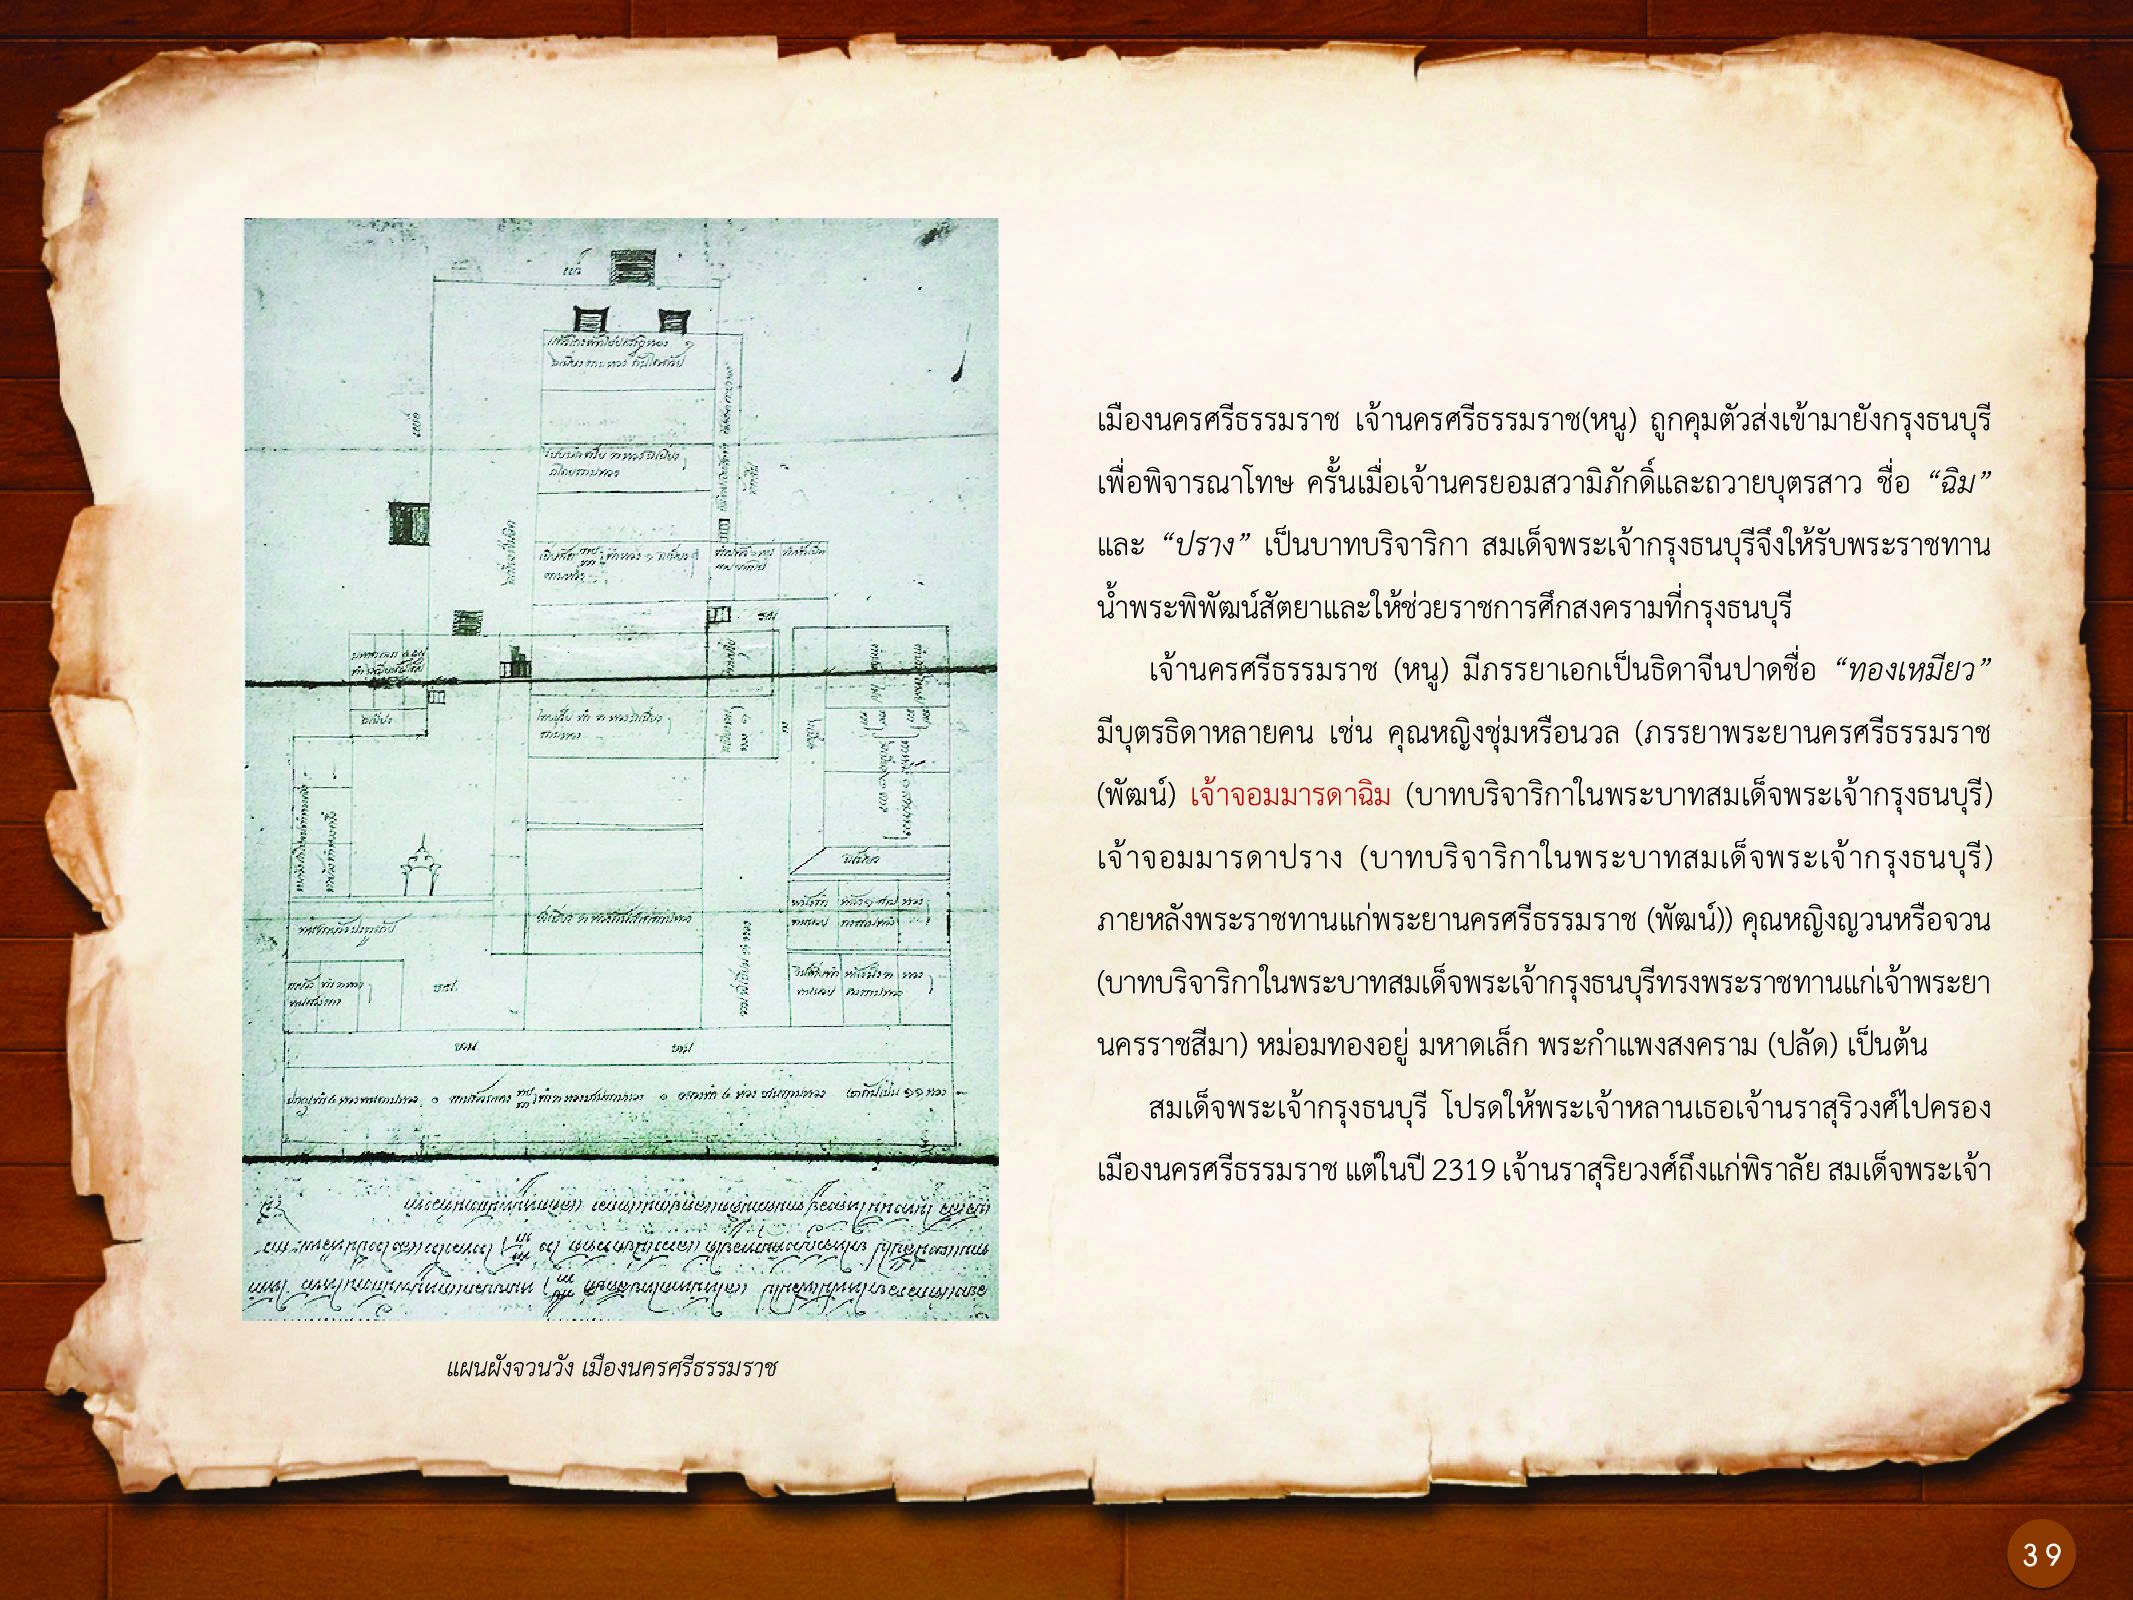 ประวัติศาสตร์กรุงธนบุรี ./images/history_dhonburi/39.jpg